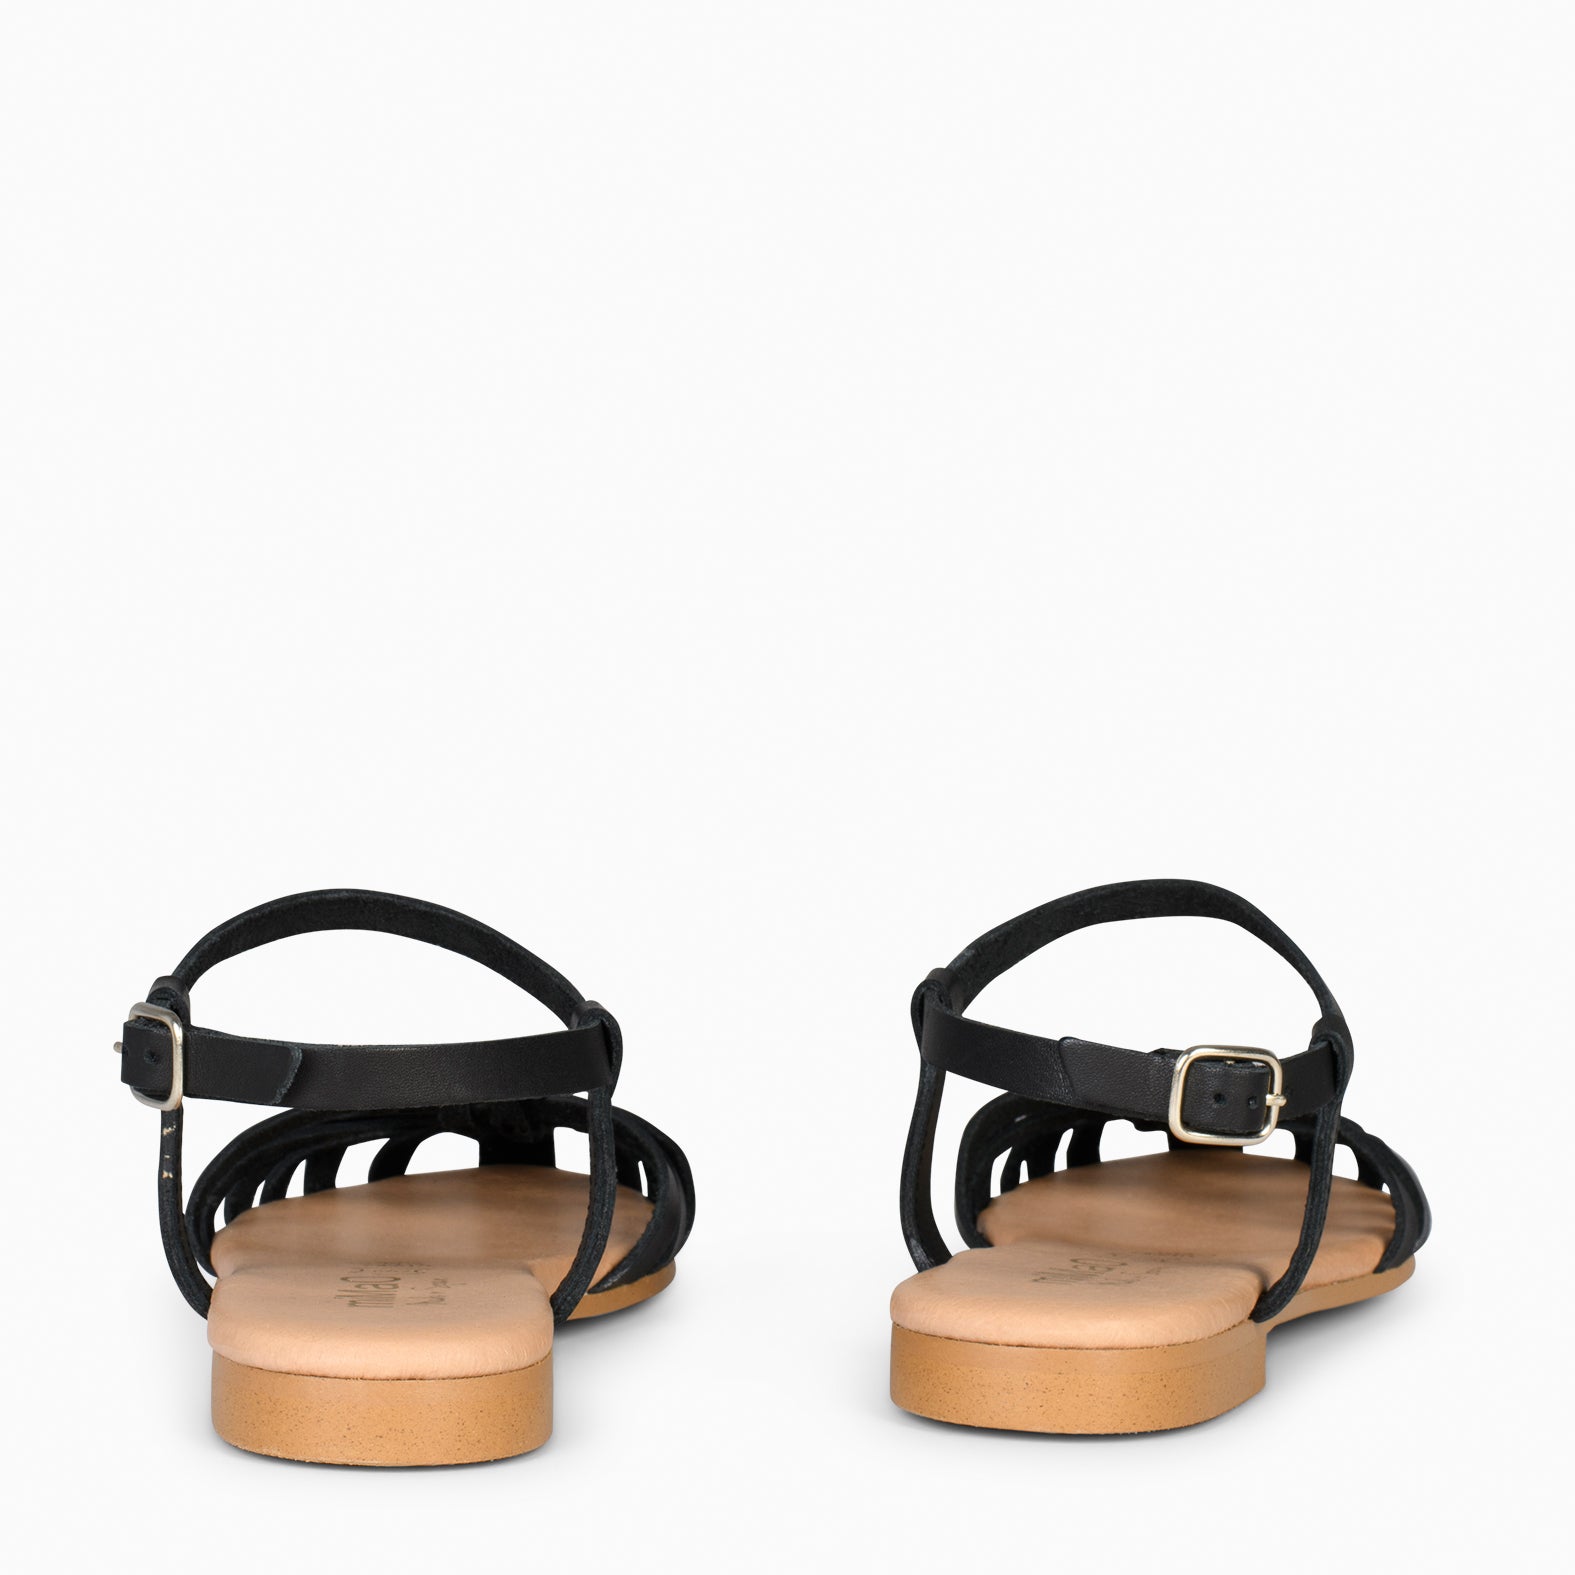 BEACH - BLACK Braided Flat Sandals 